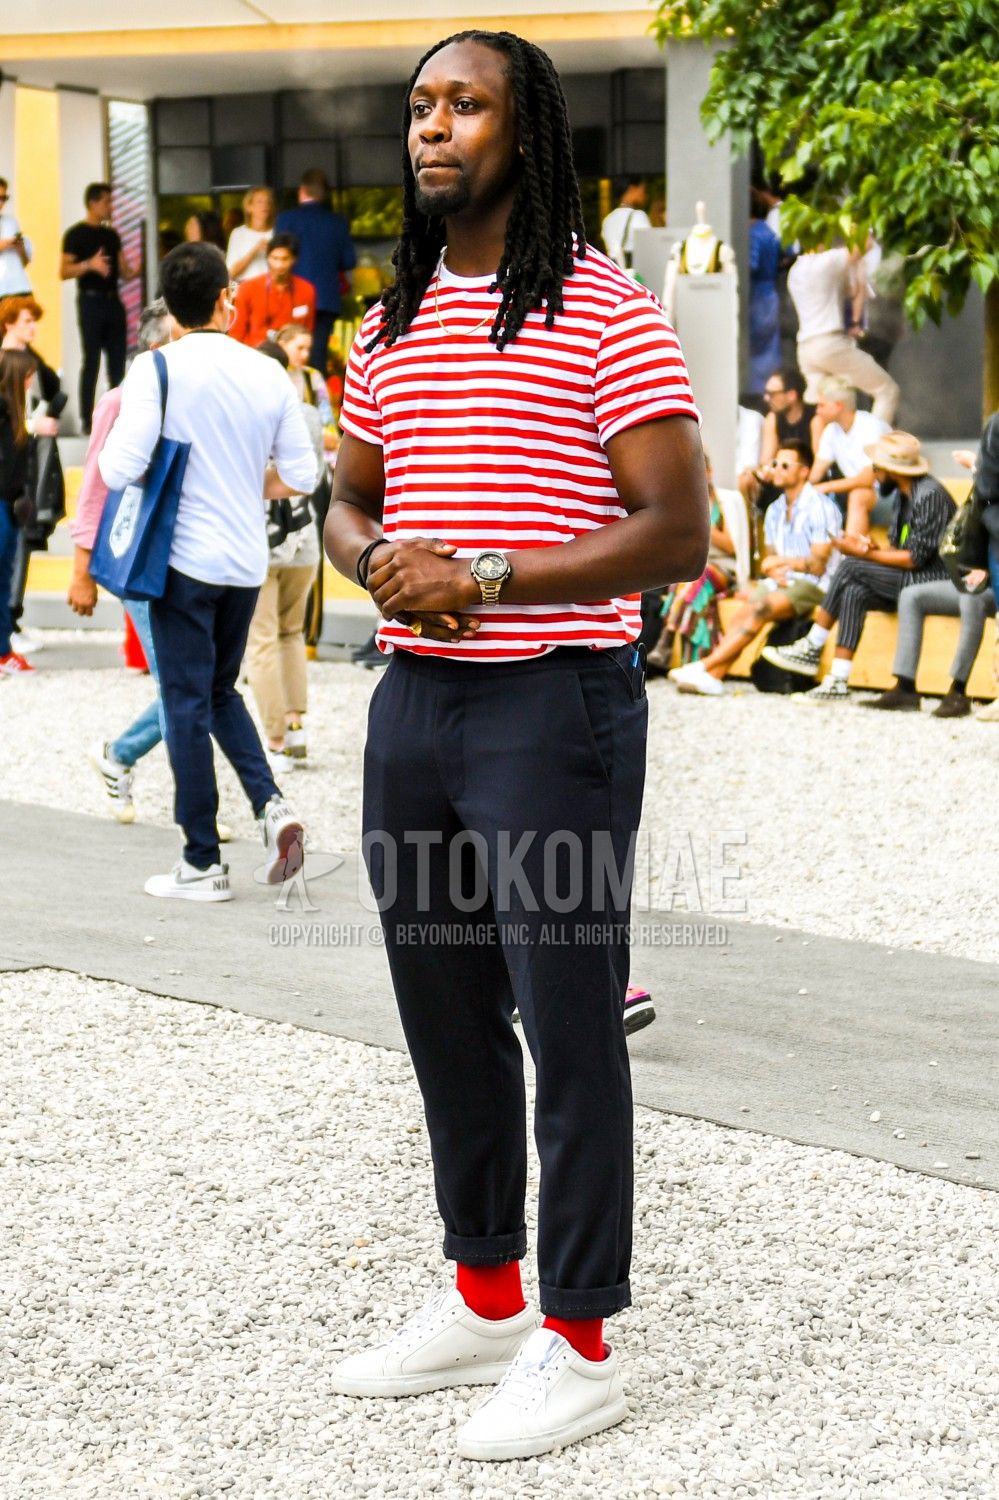 赤tシャツ コーデ メンズ特集 ハツラツとした印象を与える大人の着こなし おすすめアイテムを紹介 メンズファッションメディア Otokomae ページ 6otokomae 男前研究所 ページ 6